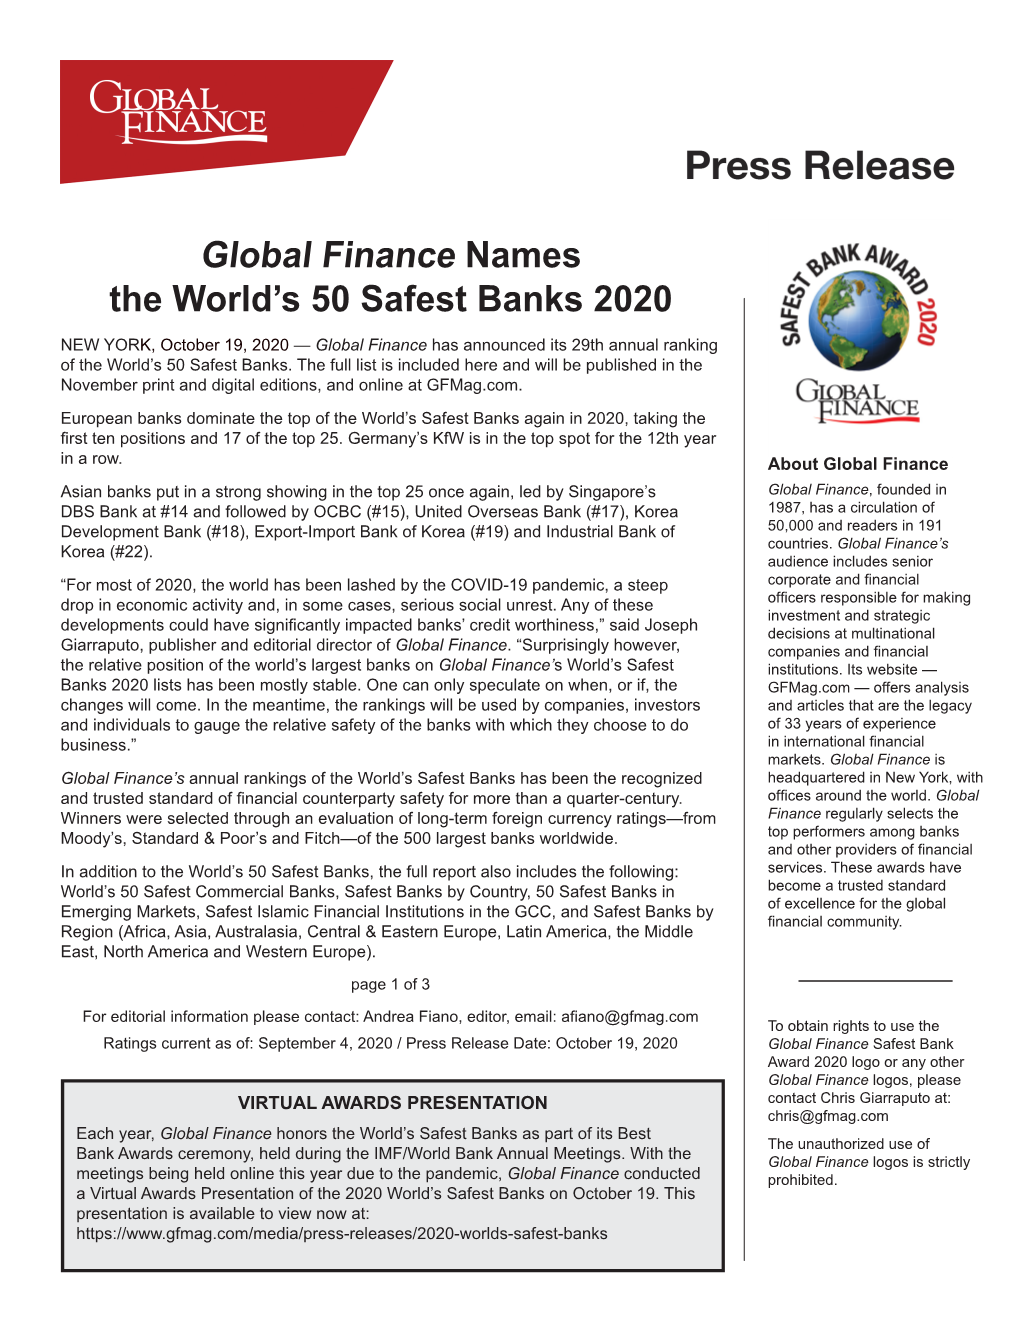 World's Safest Banks (Global Finance)